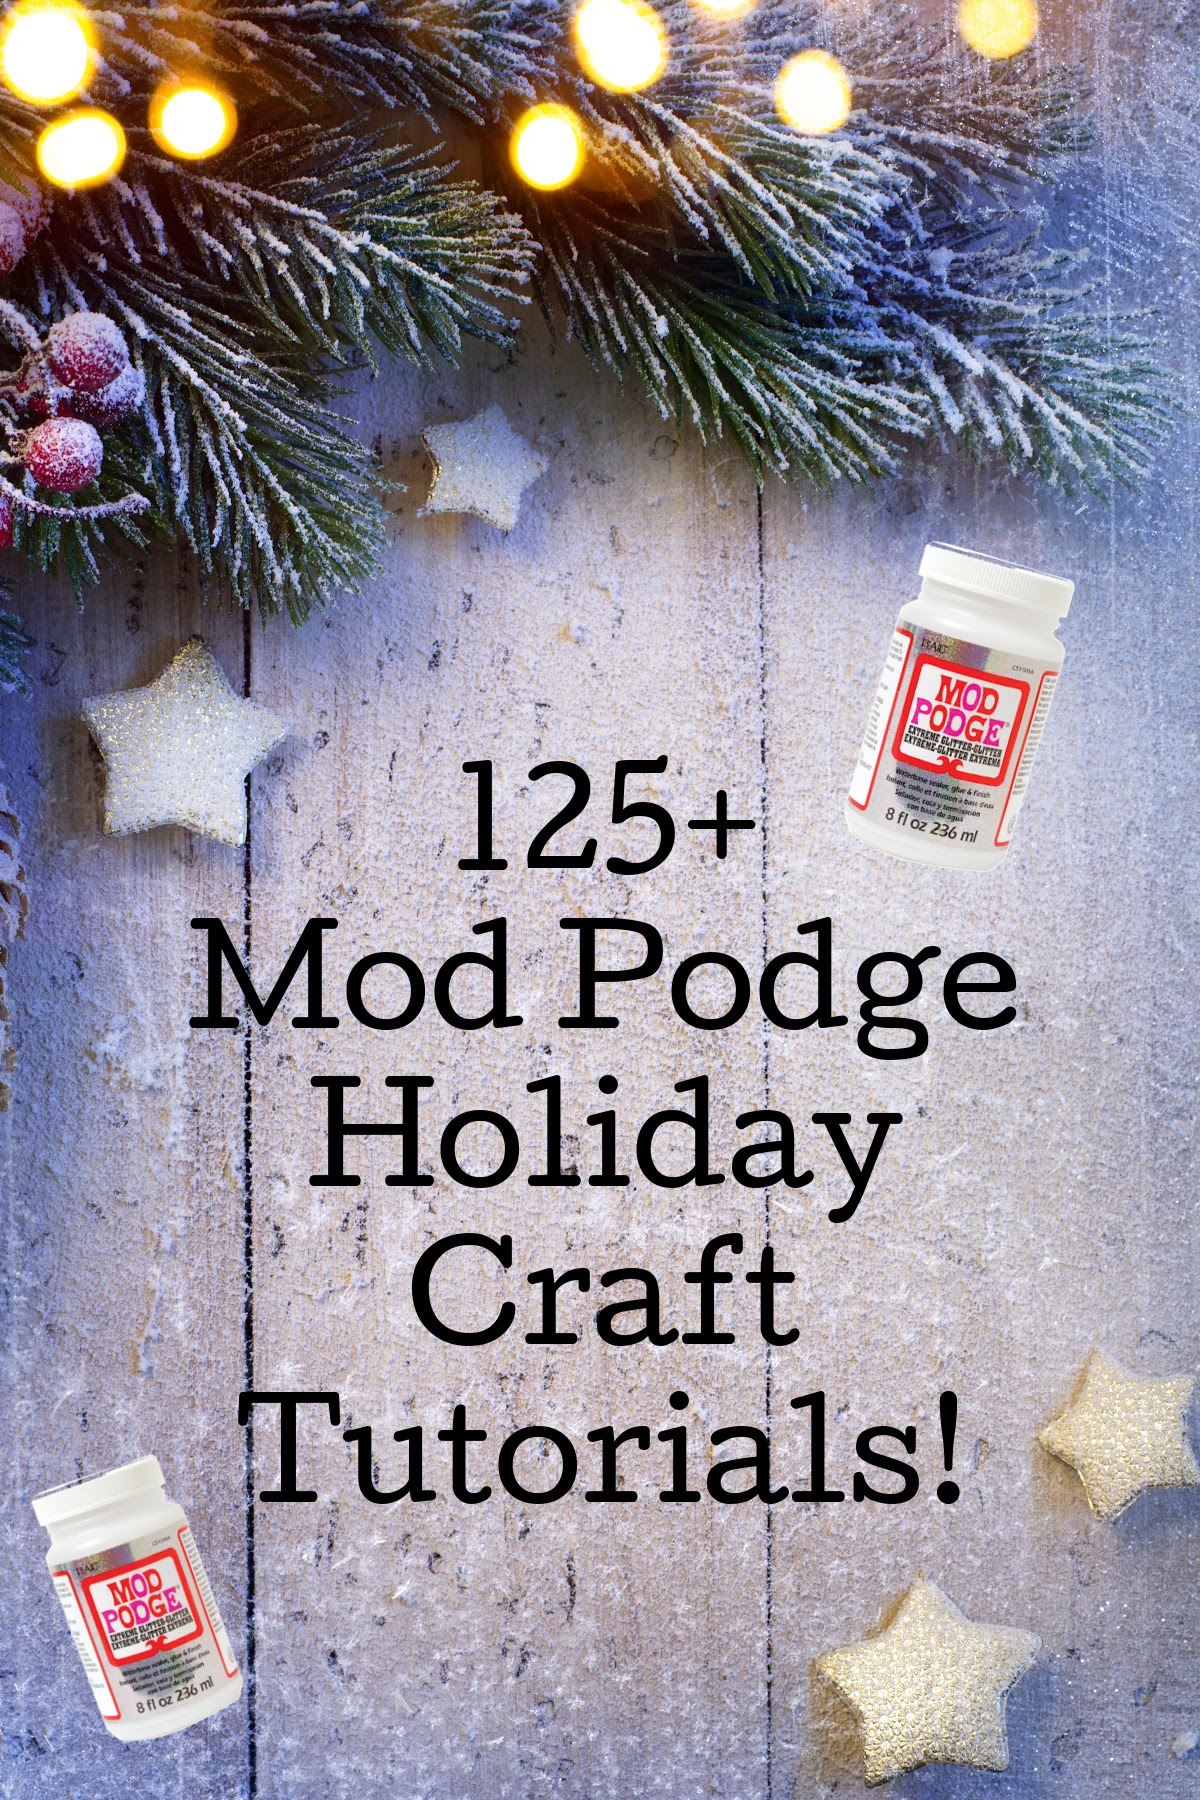 Mod Podge holiday craft tutorials